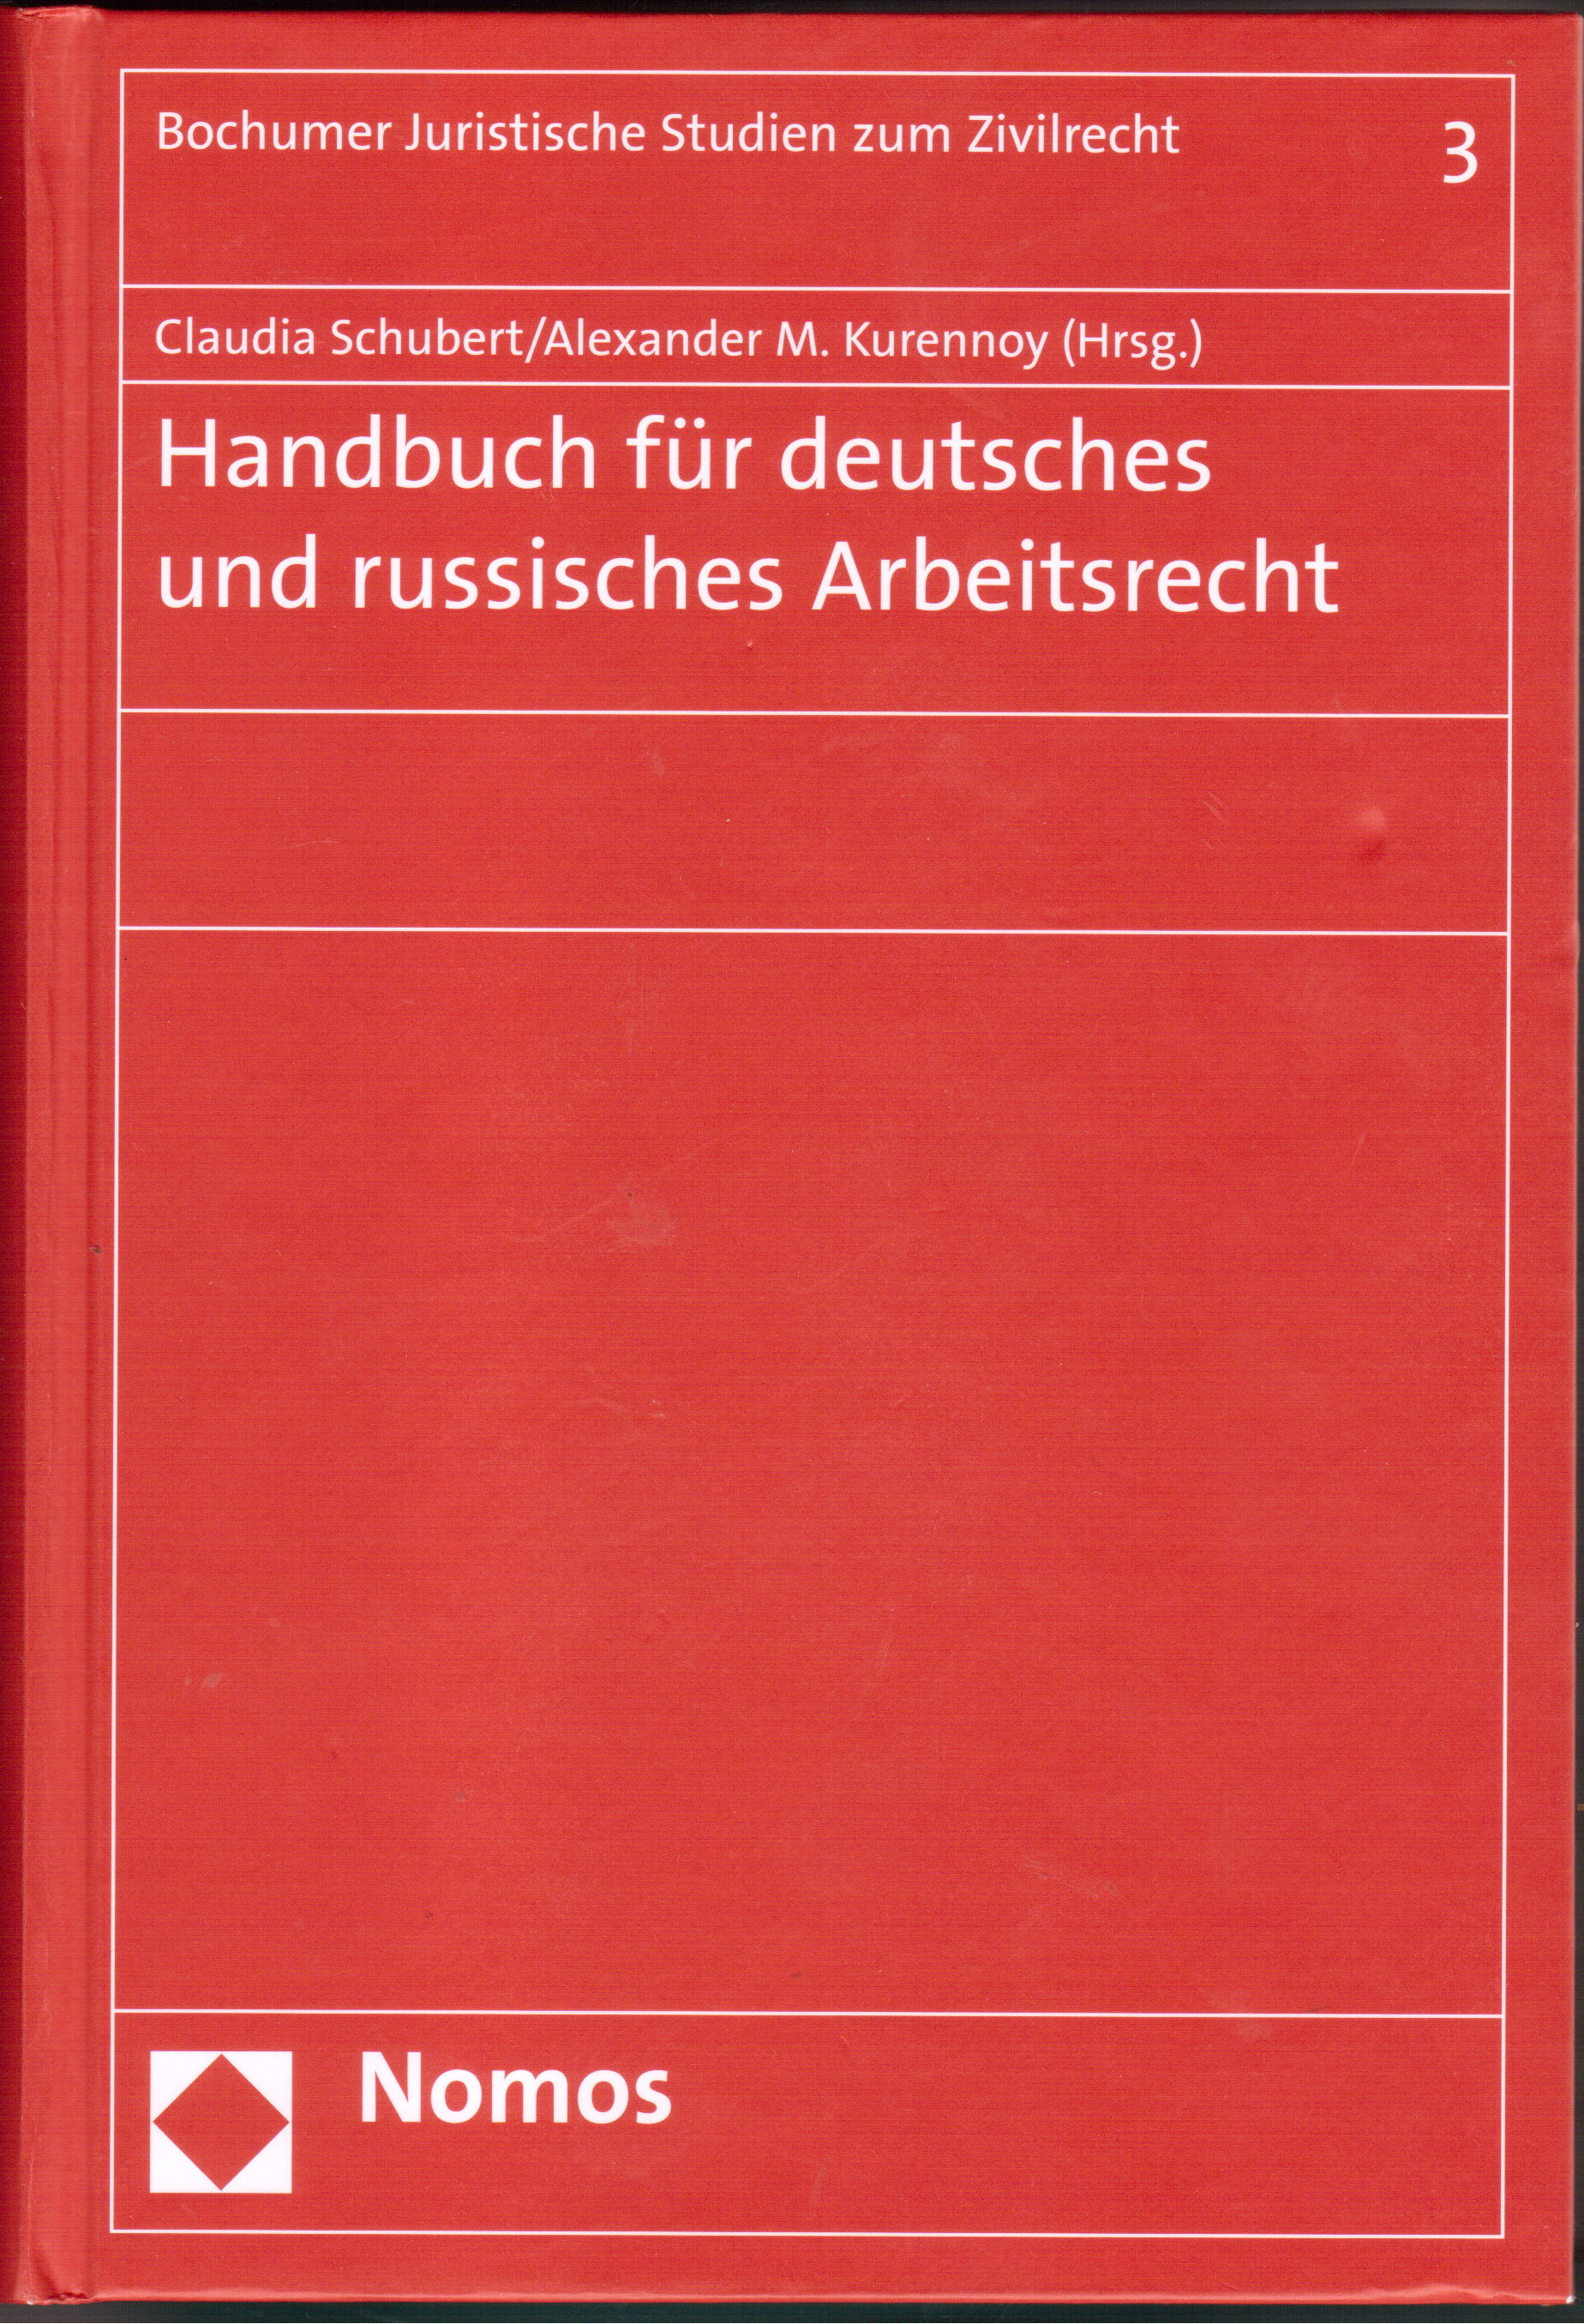 Handbuch für deutches and russishces Arbeitsrecht